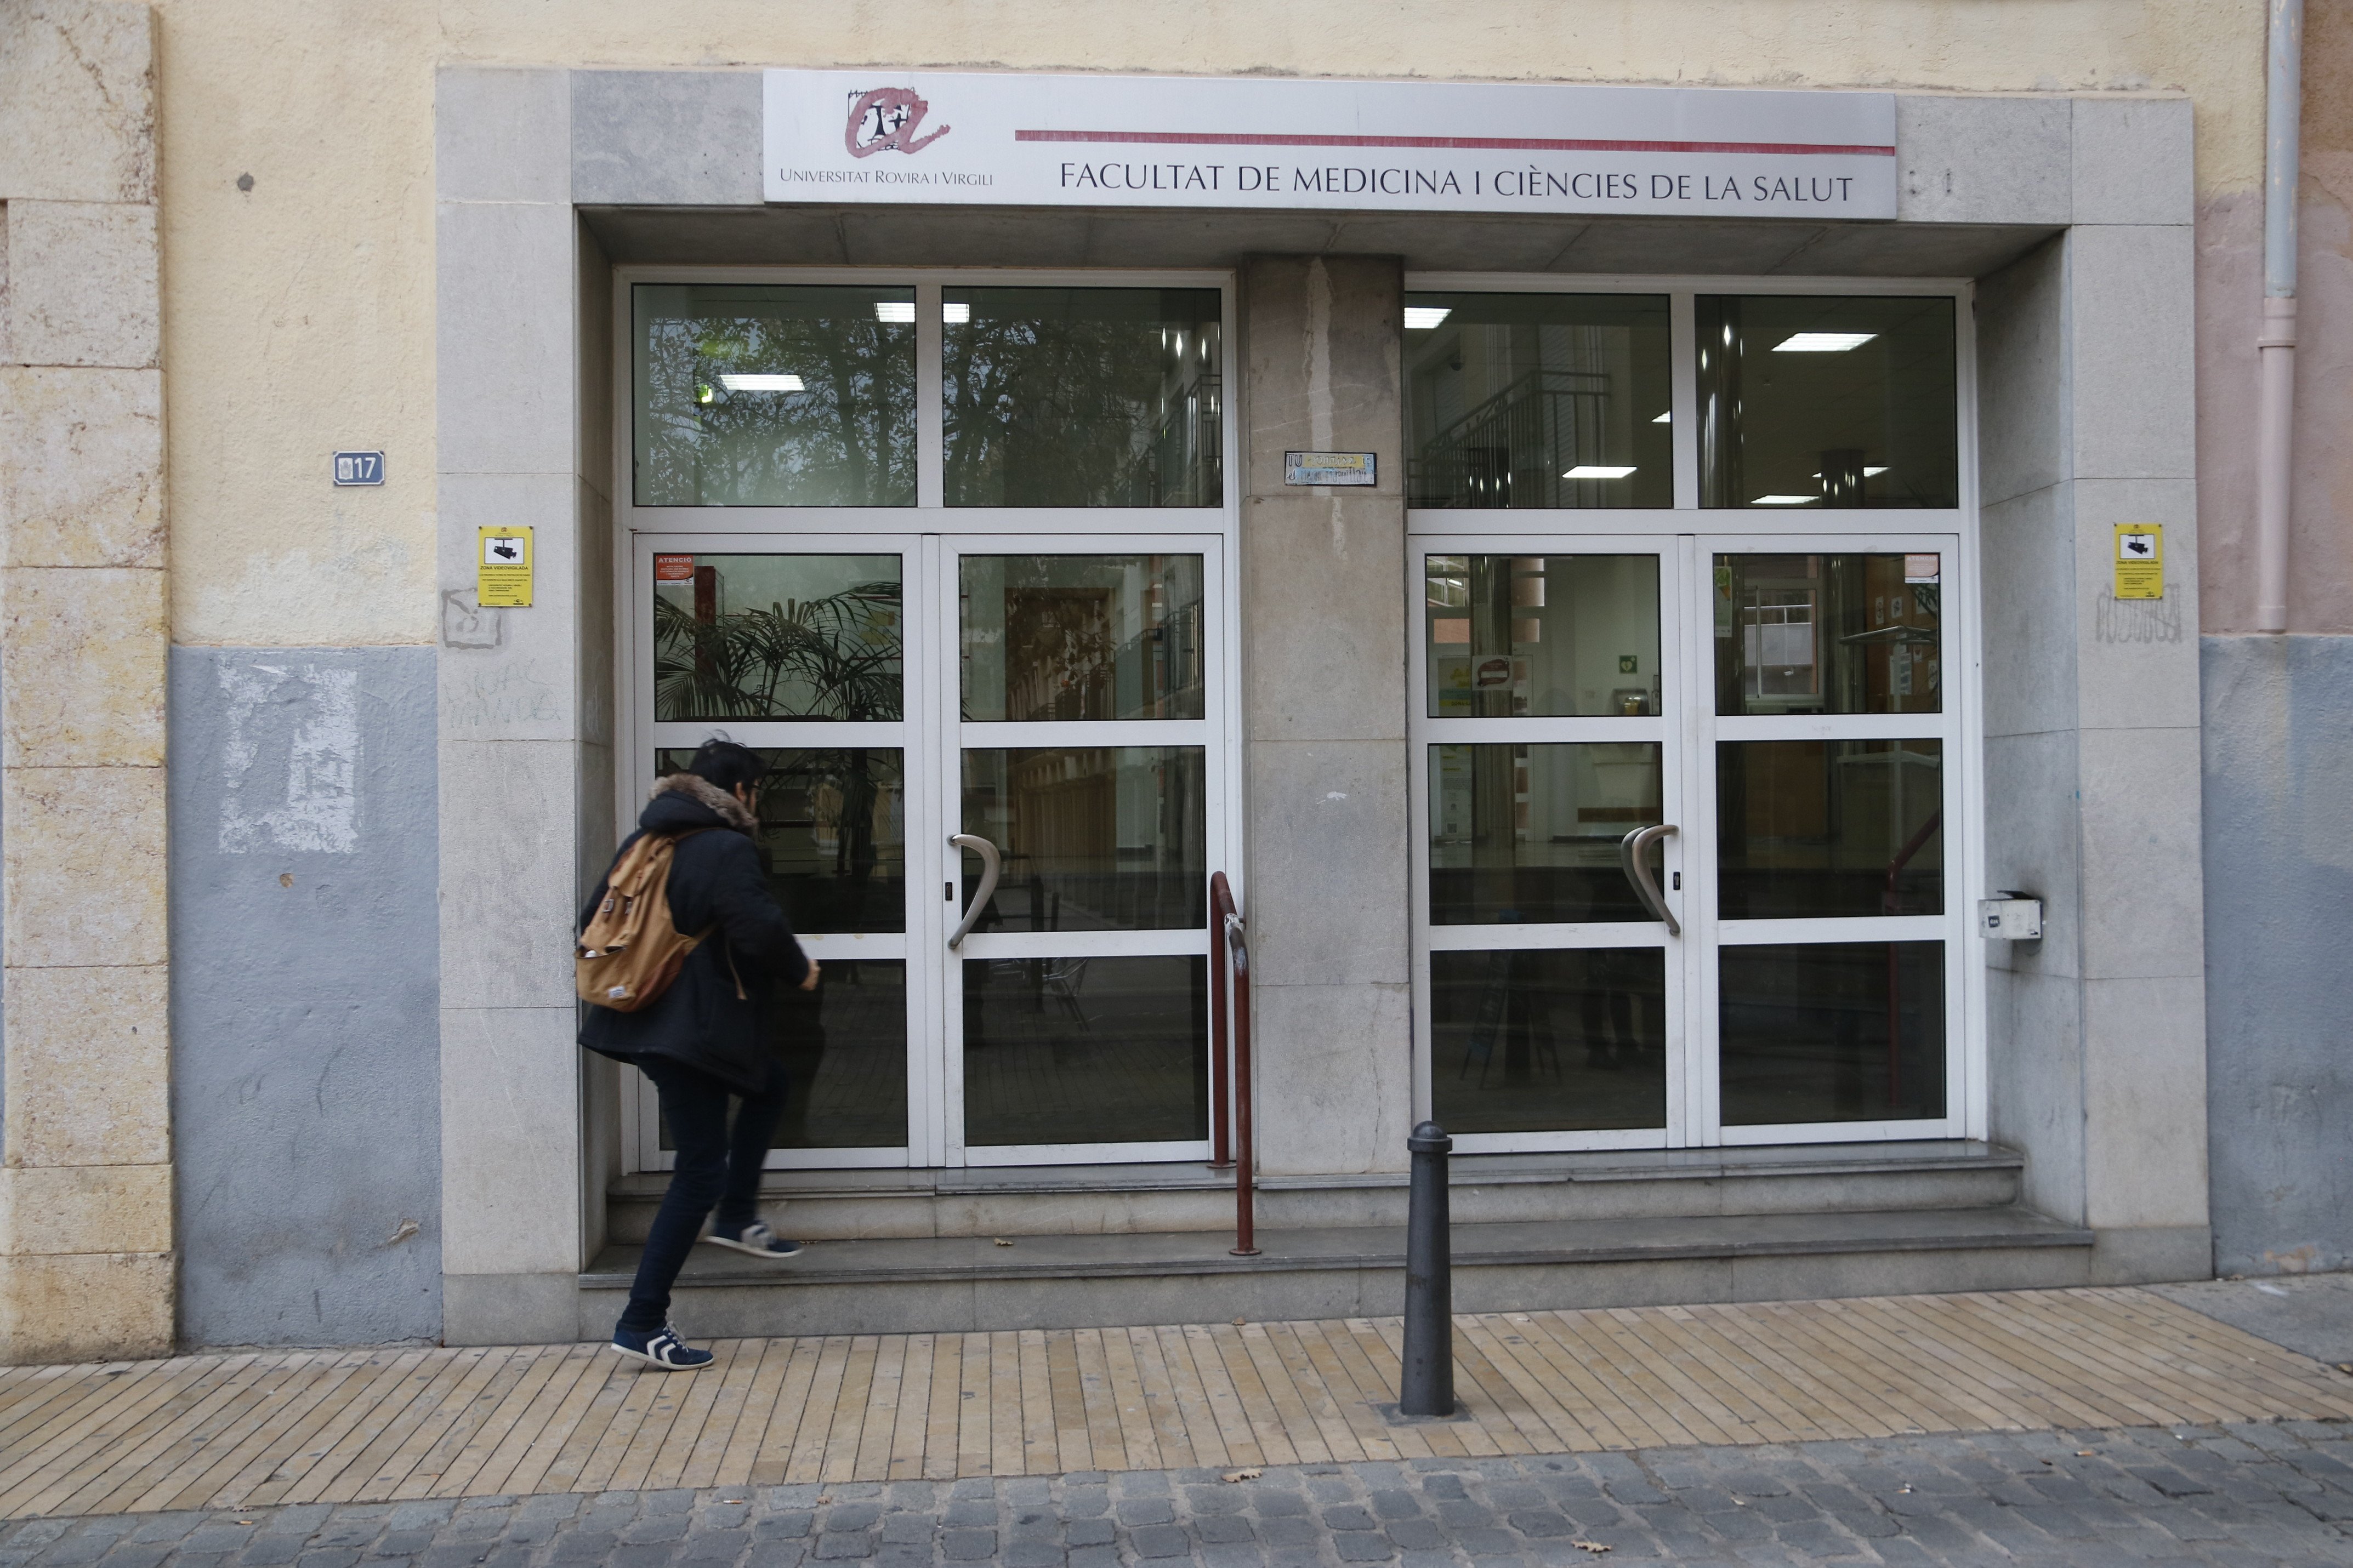 Brot a Medicina de la URV després d'una festa universitària: classes suspeses